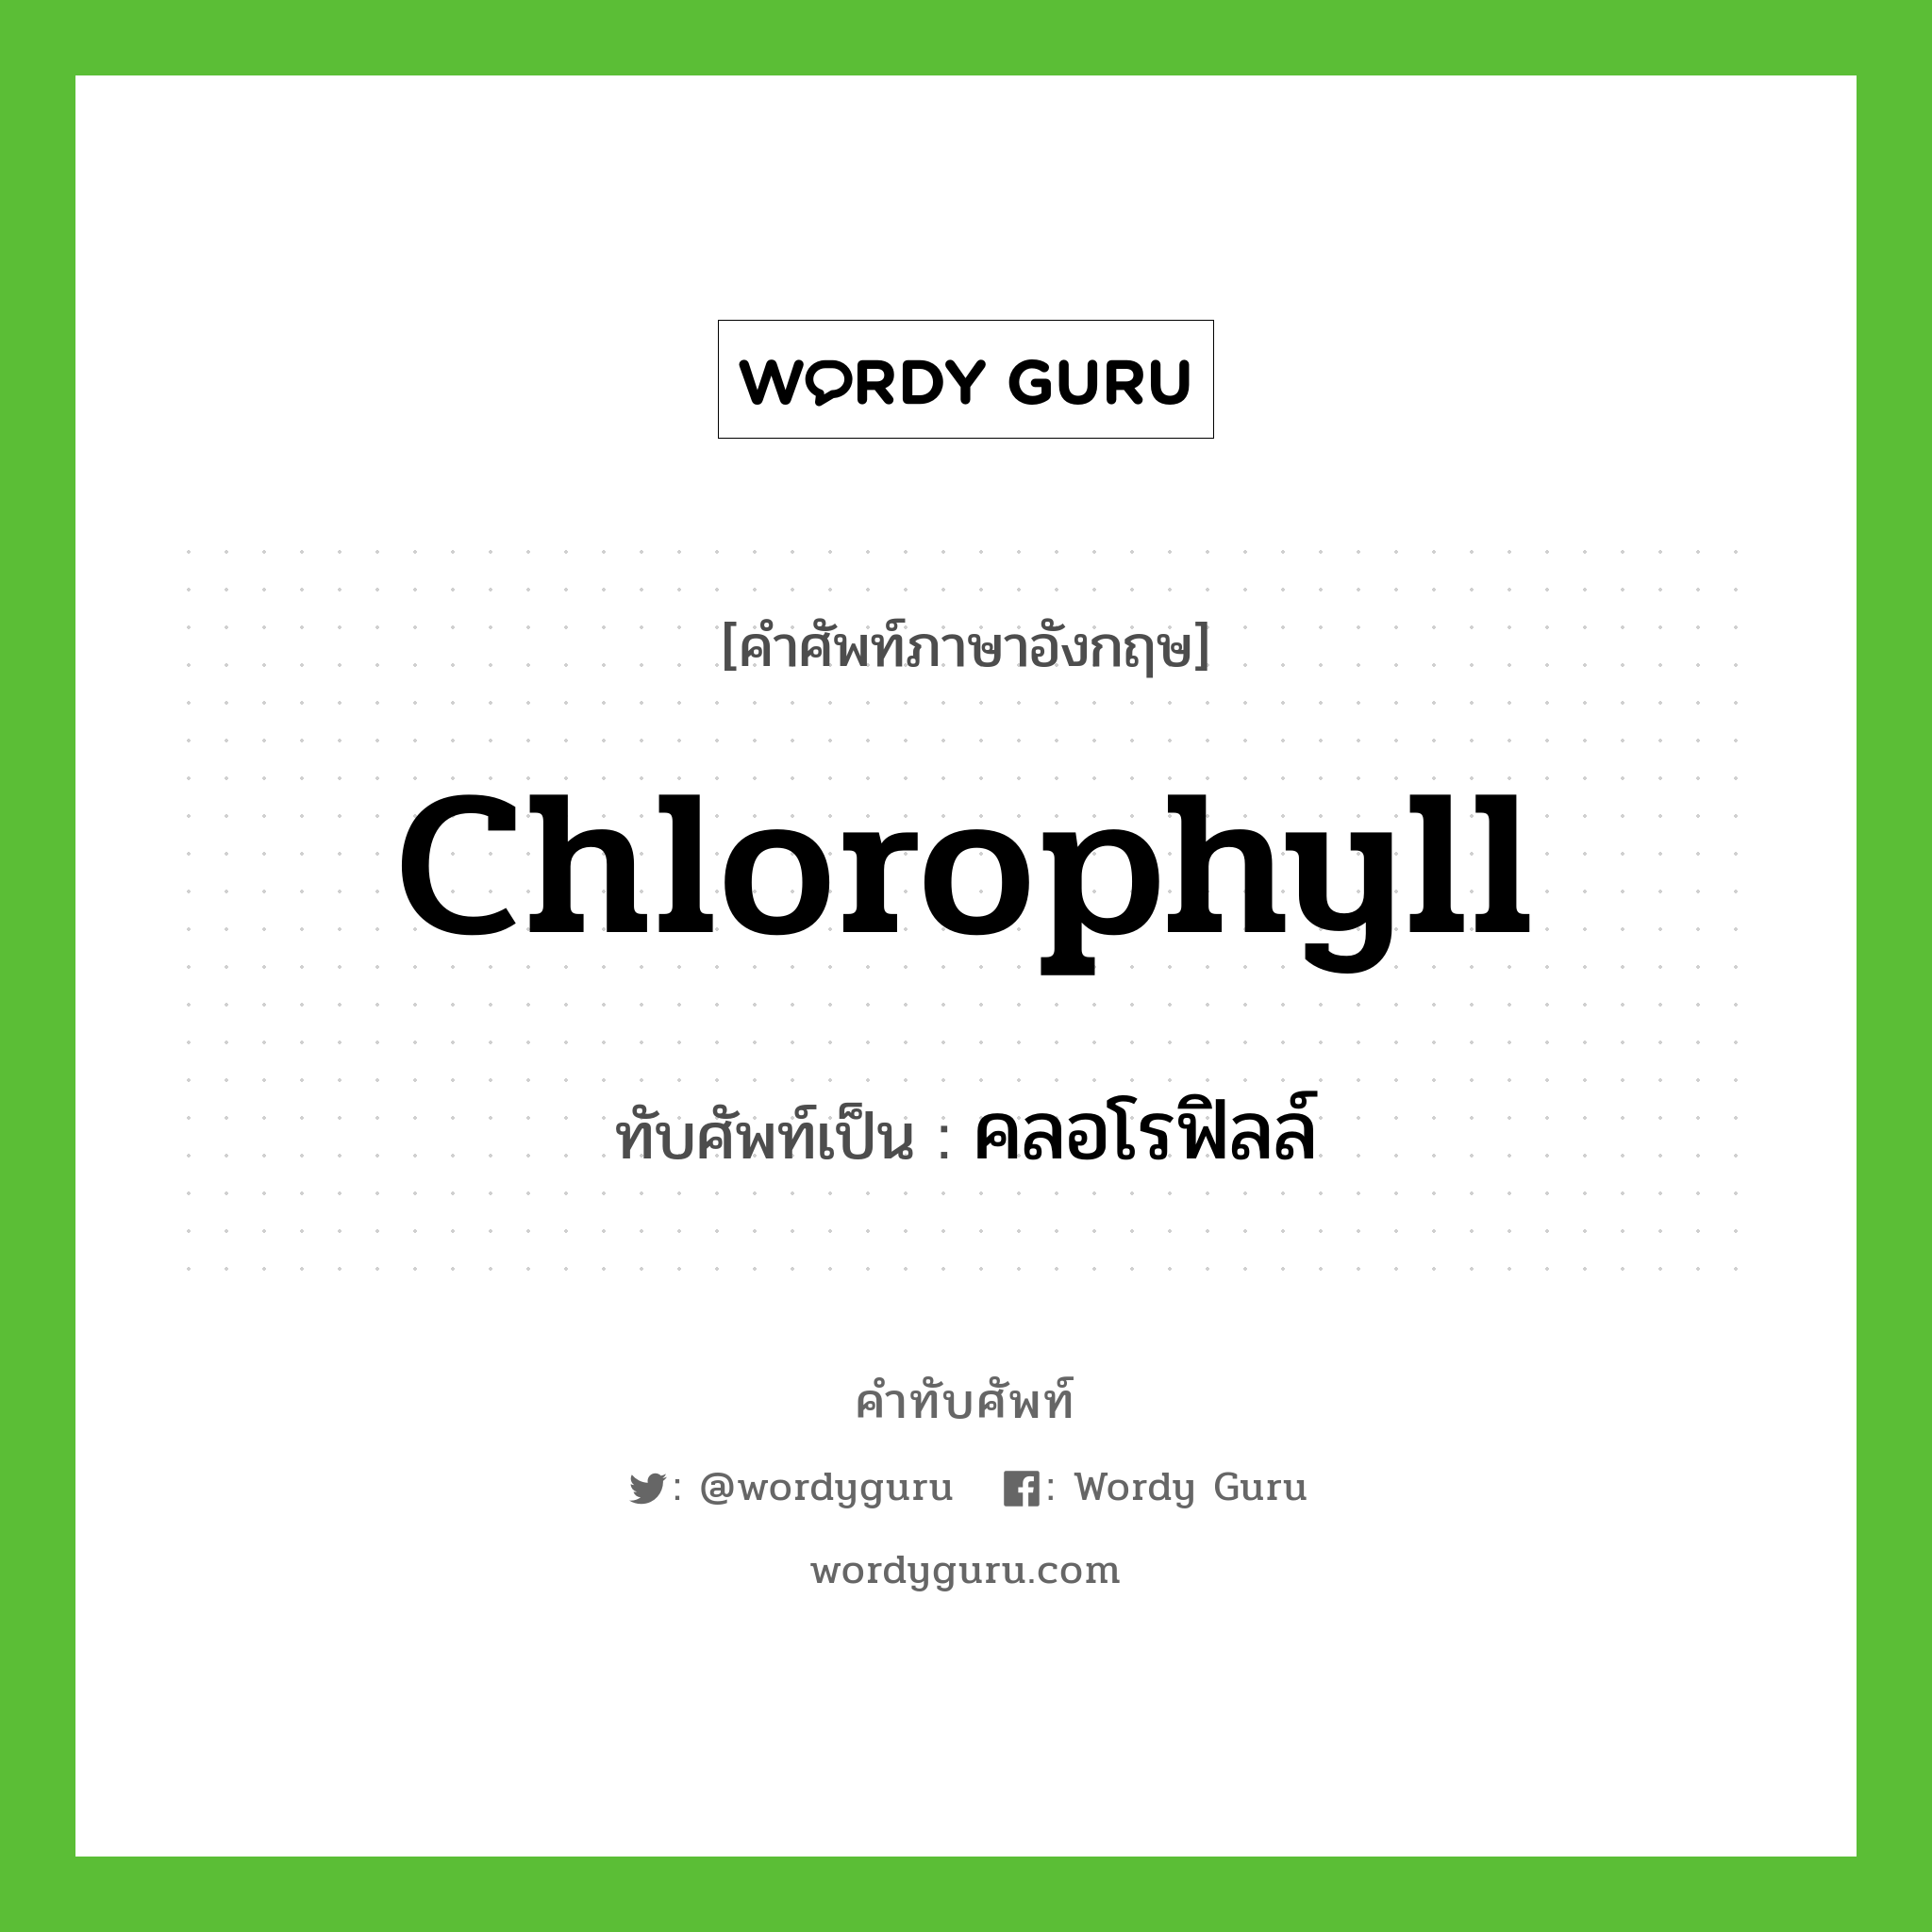 คลอโรฟิลล์ เขียนอย่างไร?, คำศัพท์ภาษาอังกฤษ คลอโรฟิลล์ ทับศัพท์เป็น chlorophyll